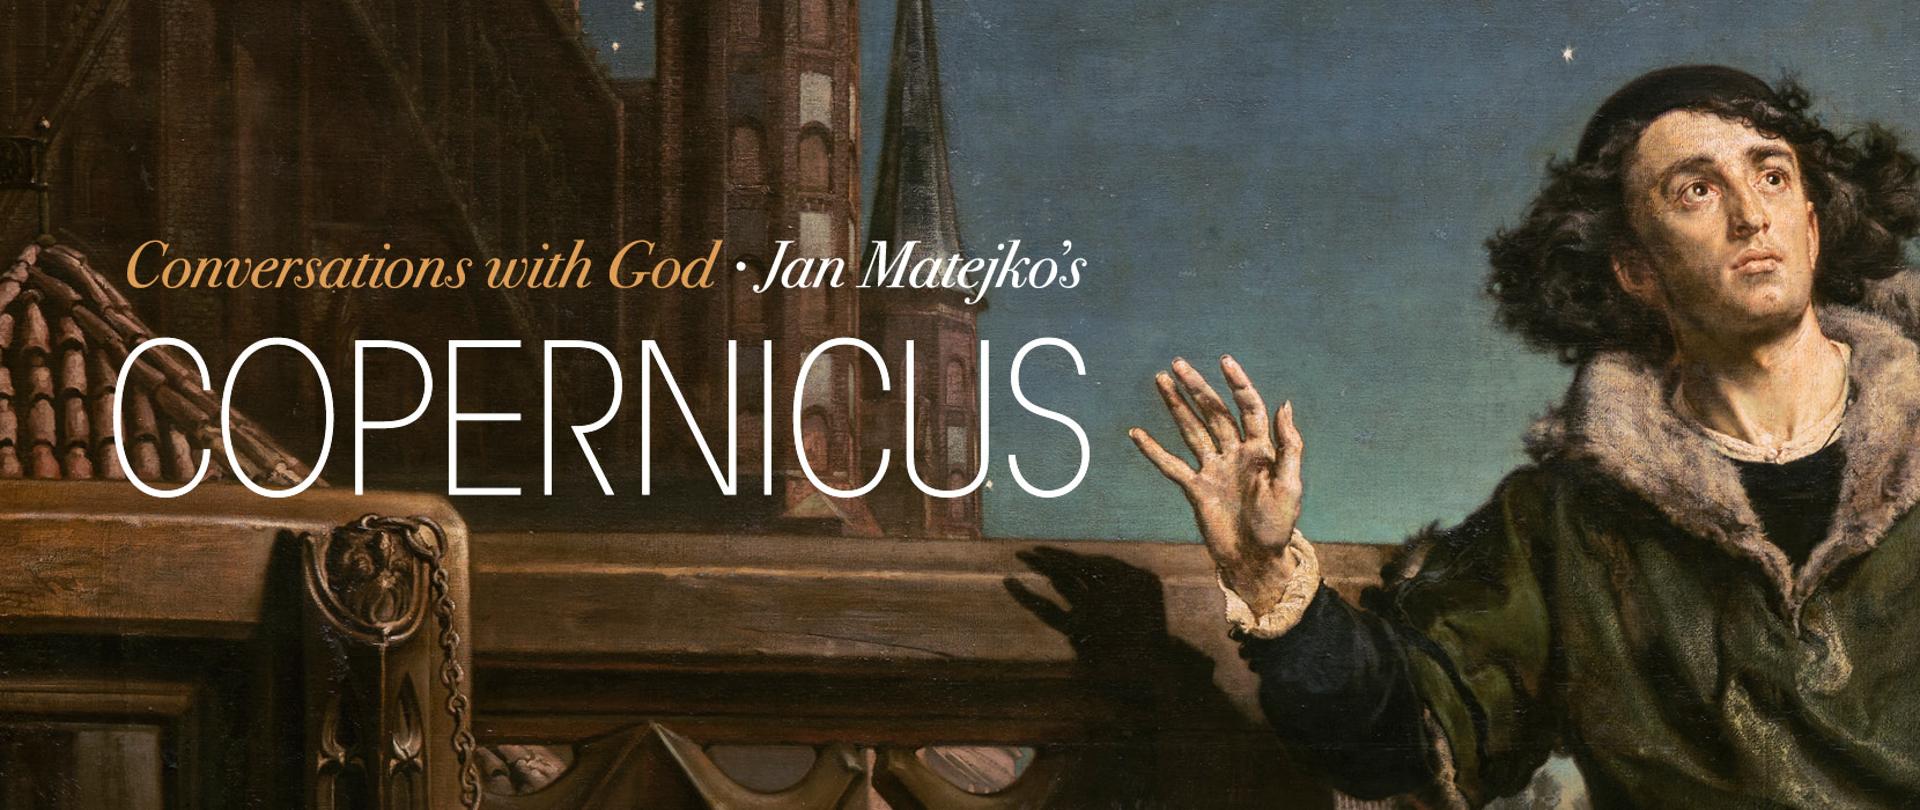 Presentación del cuadro de Jan Matejko "Astrónomo Nicolás Copérnico en una conversación con Dios".